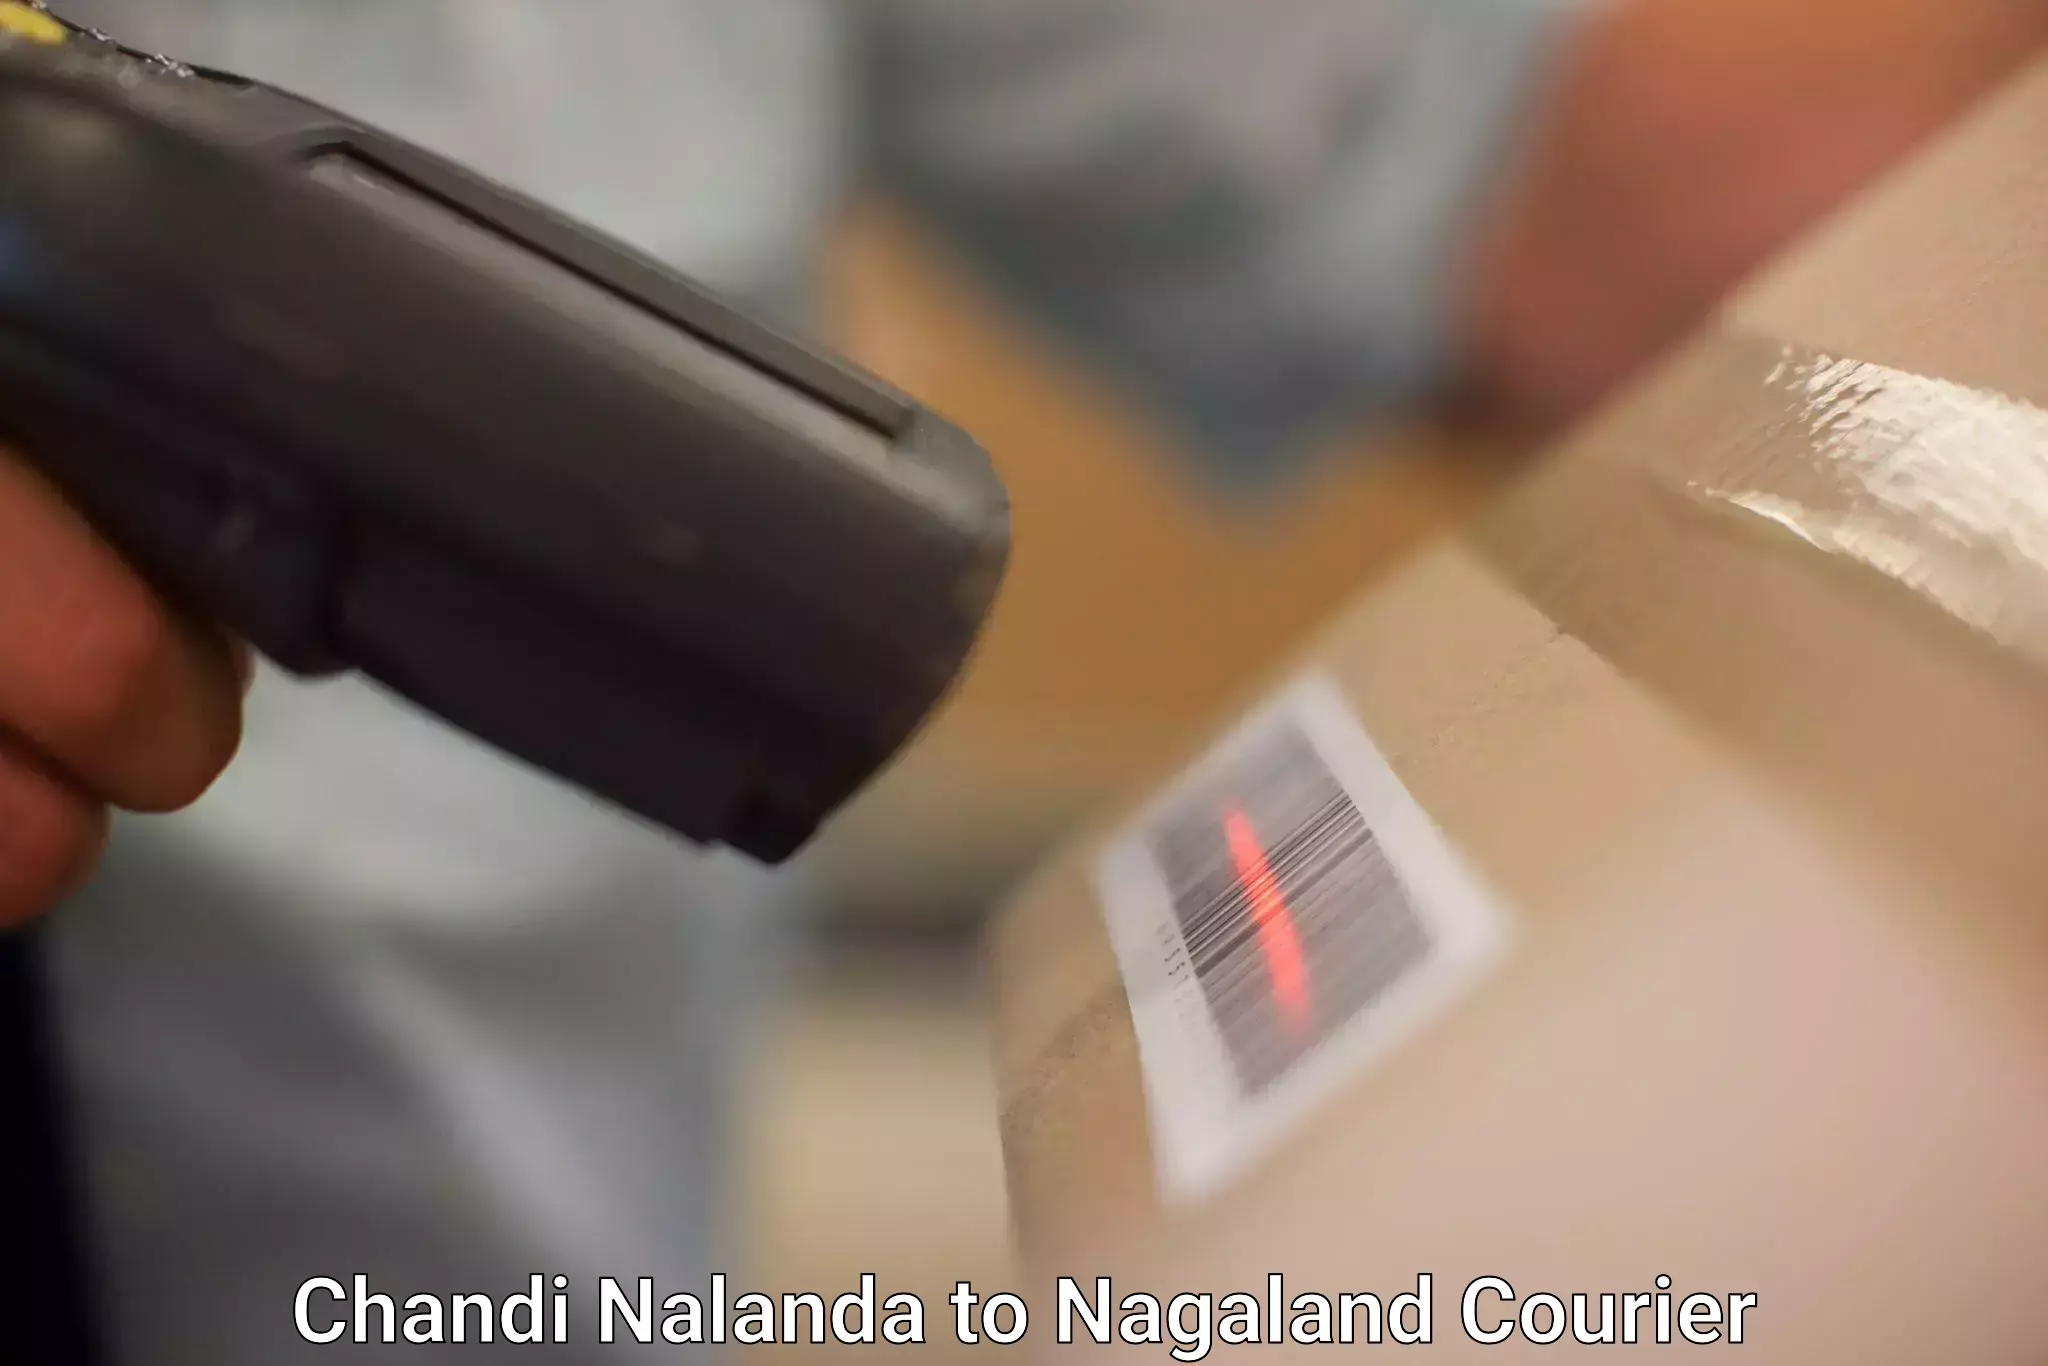 Global shipping networks Chandi Nalanda to Wokha